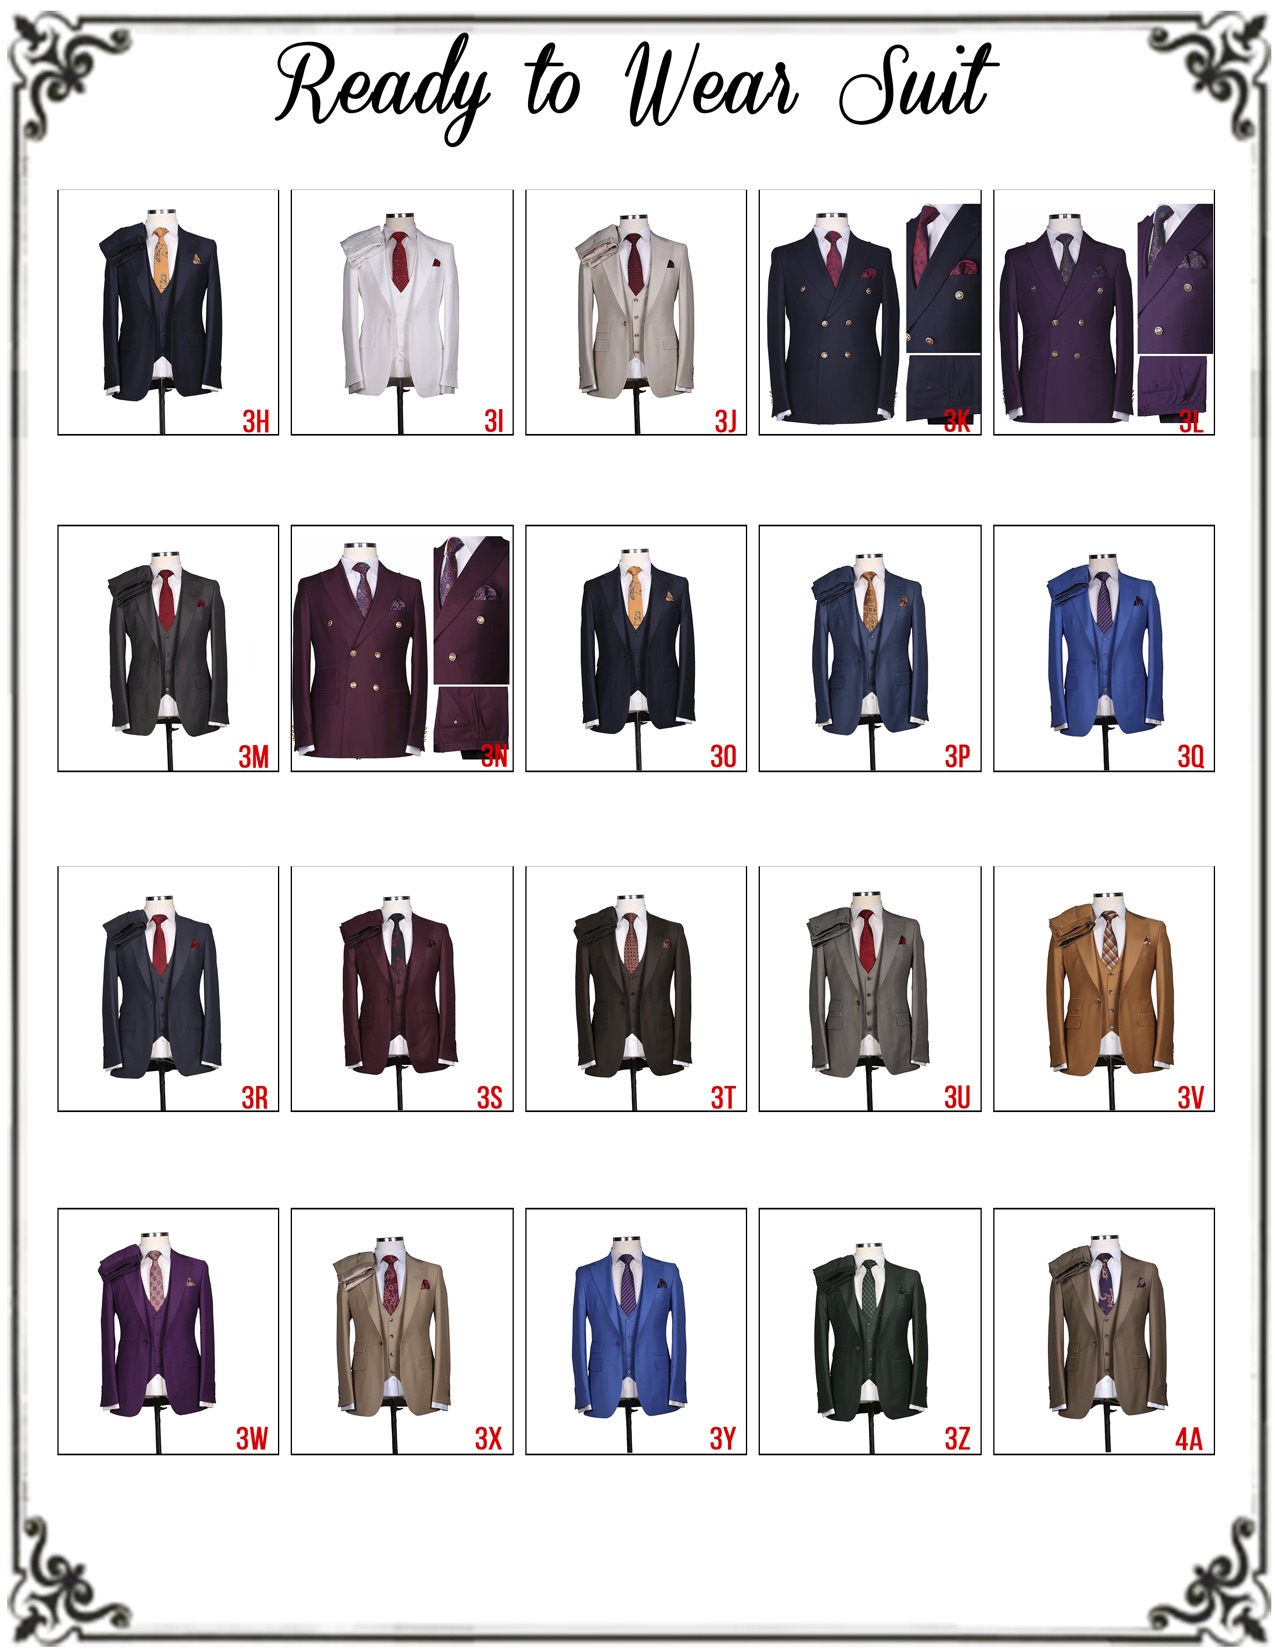 ready-to-wear-suit-options-jpg-4.jpg